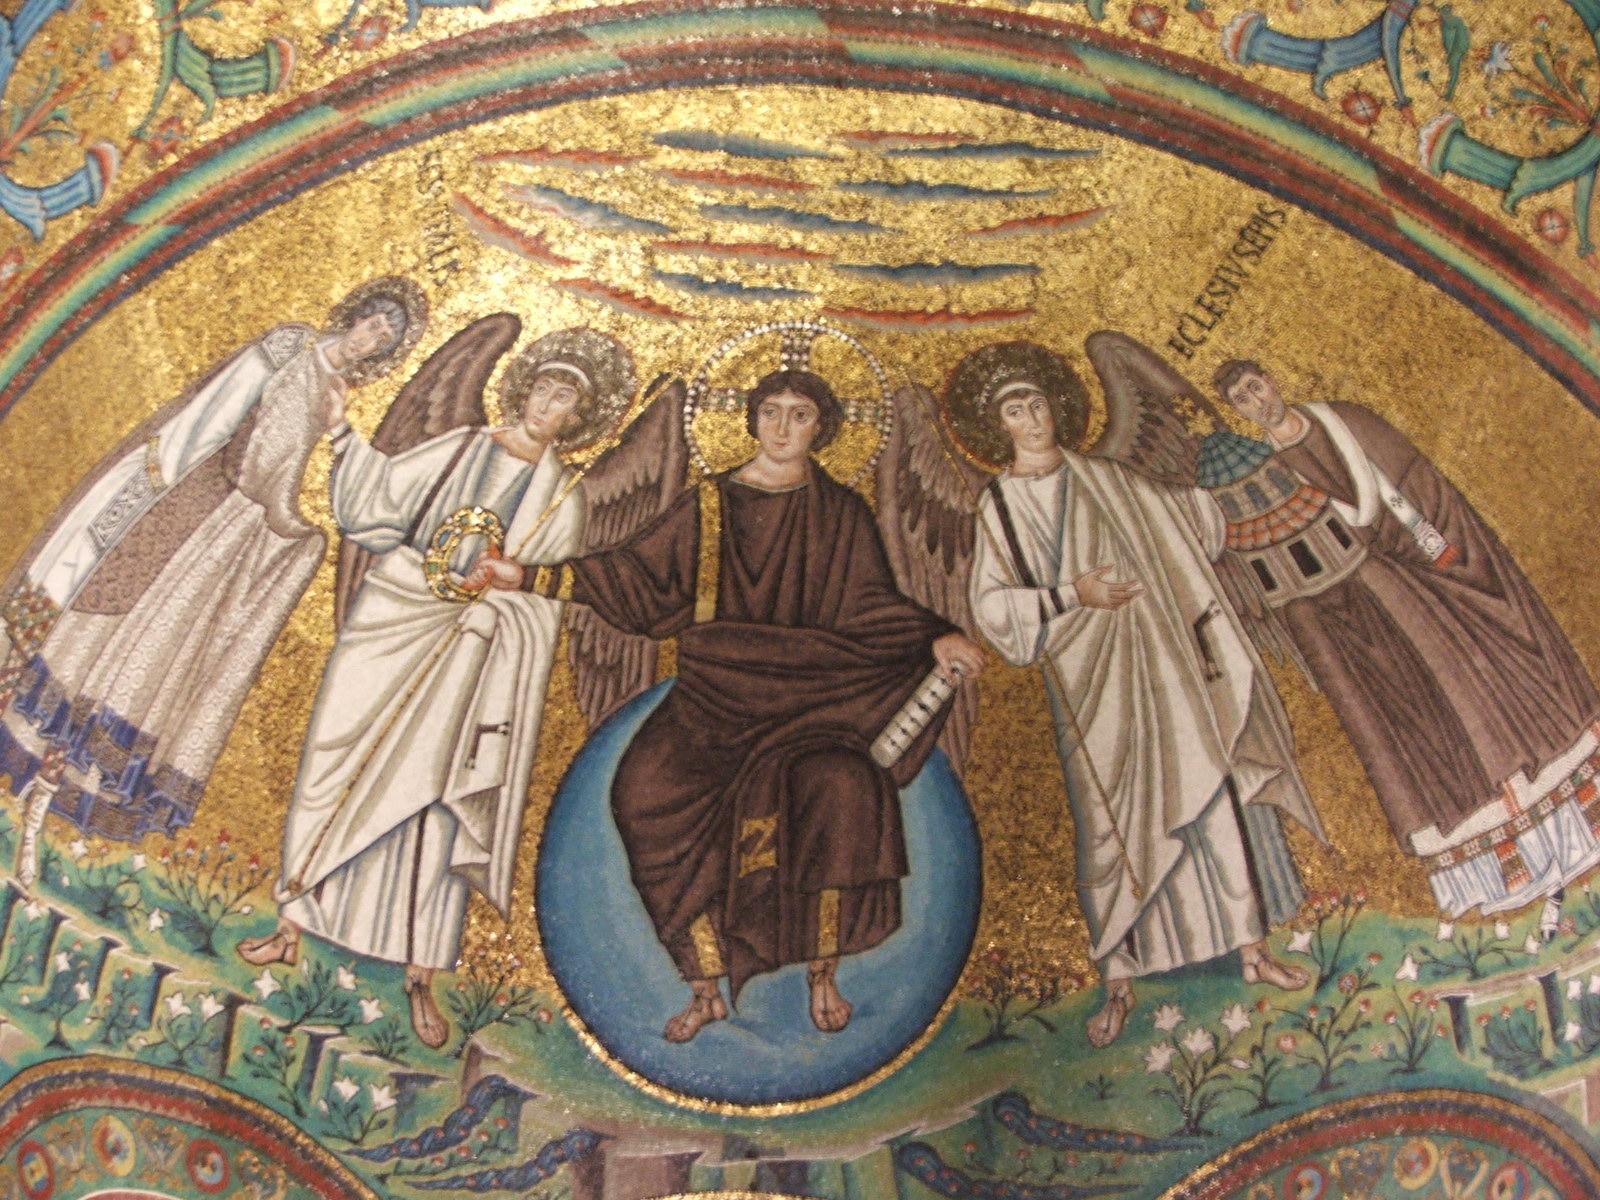 Ο Χριστός στεφανώνει τον άγιο Βιτάλιο στον παράδεισο. Ψηφιδωτό πάνω από το ιερό στην εκκλησία του Αγίου Βιταλίου στην Ραβέννα (6ος αιώνας).